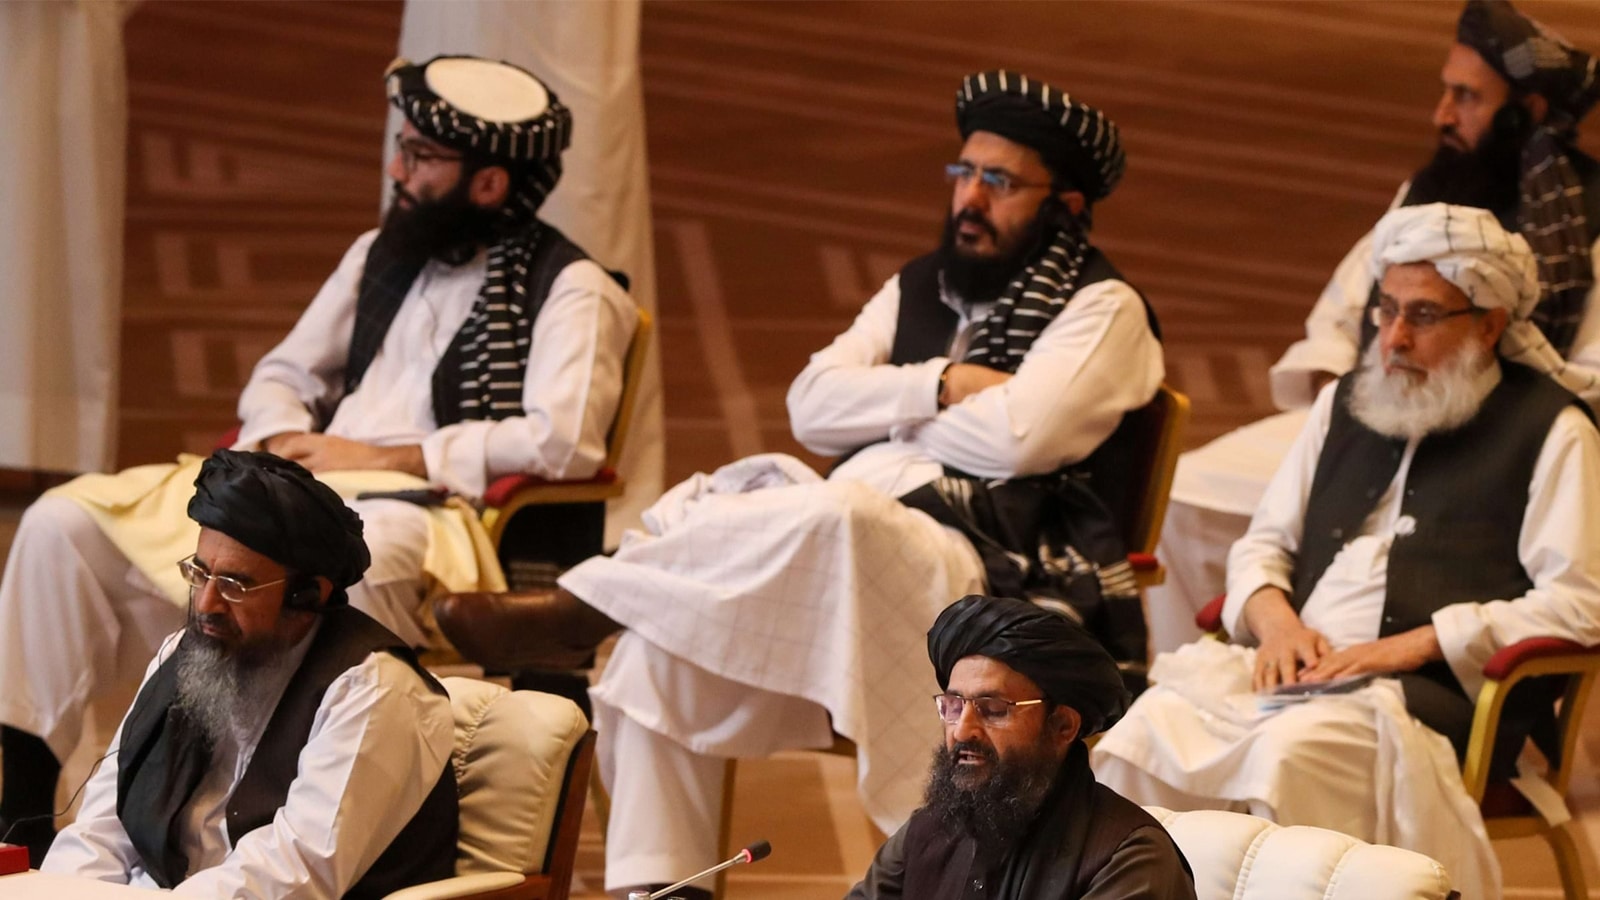 رغم التفوق الكاسح على الأرض رئيس طالبان يؤيد بشدة حل النزاع سياسيا